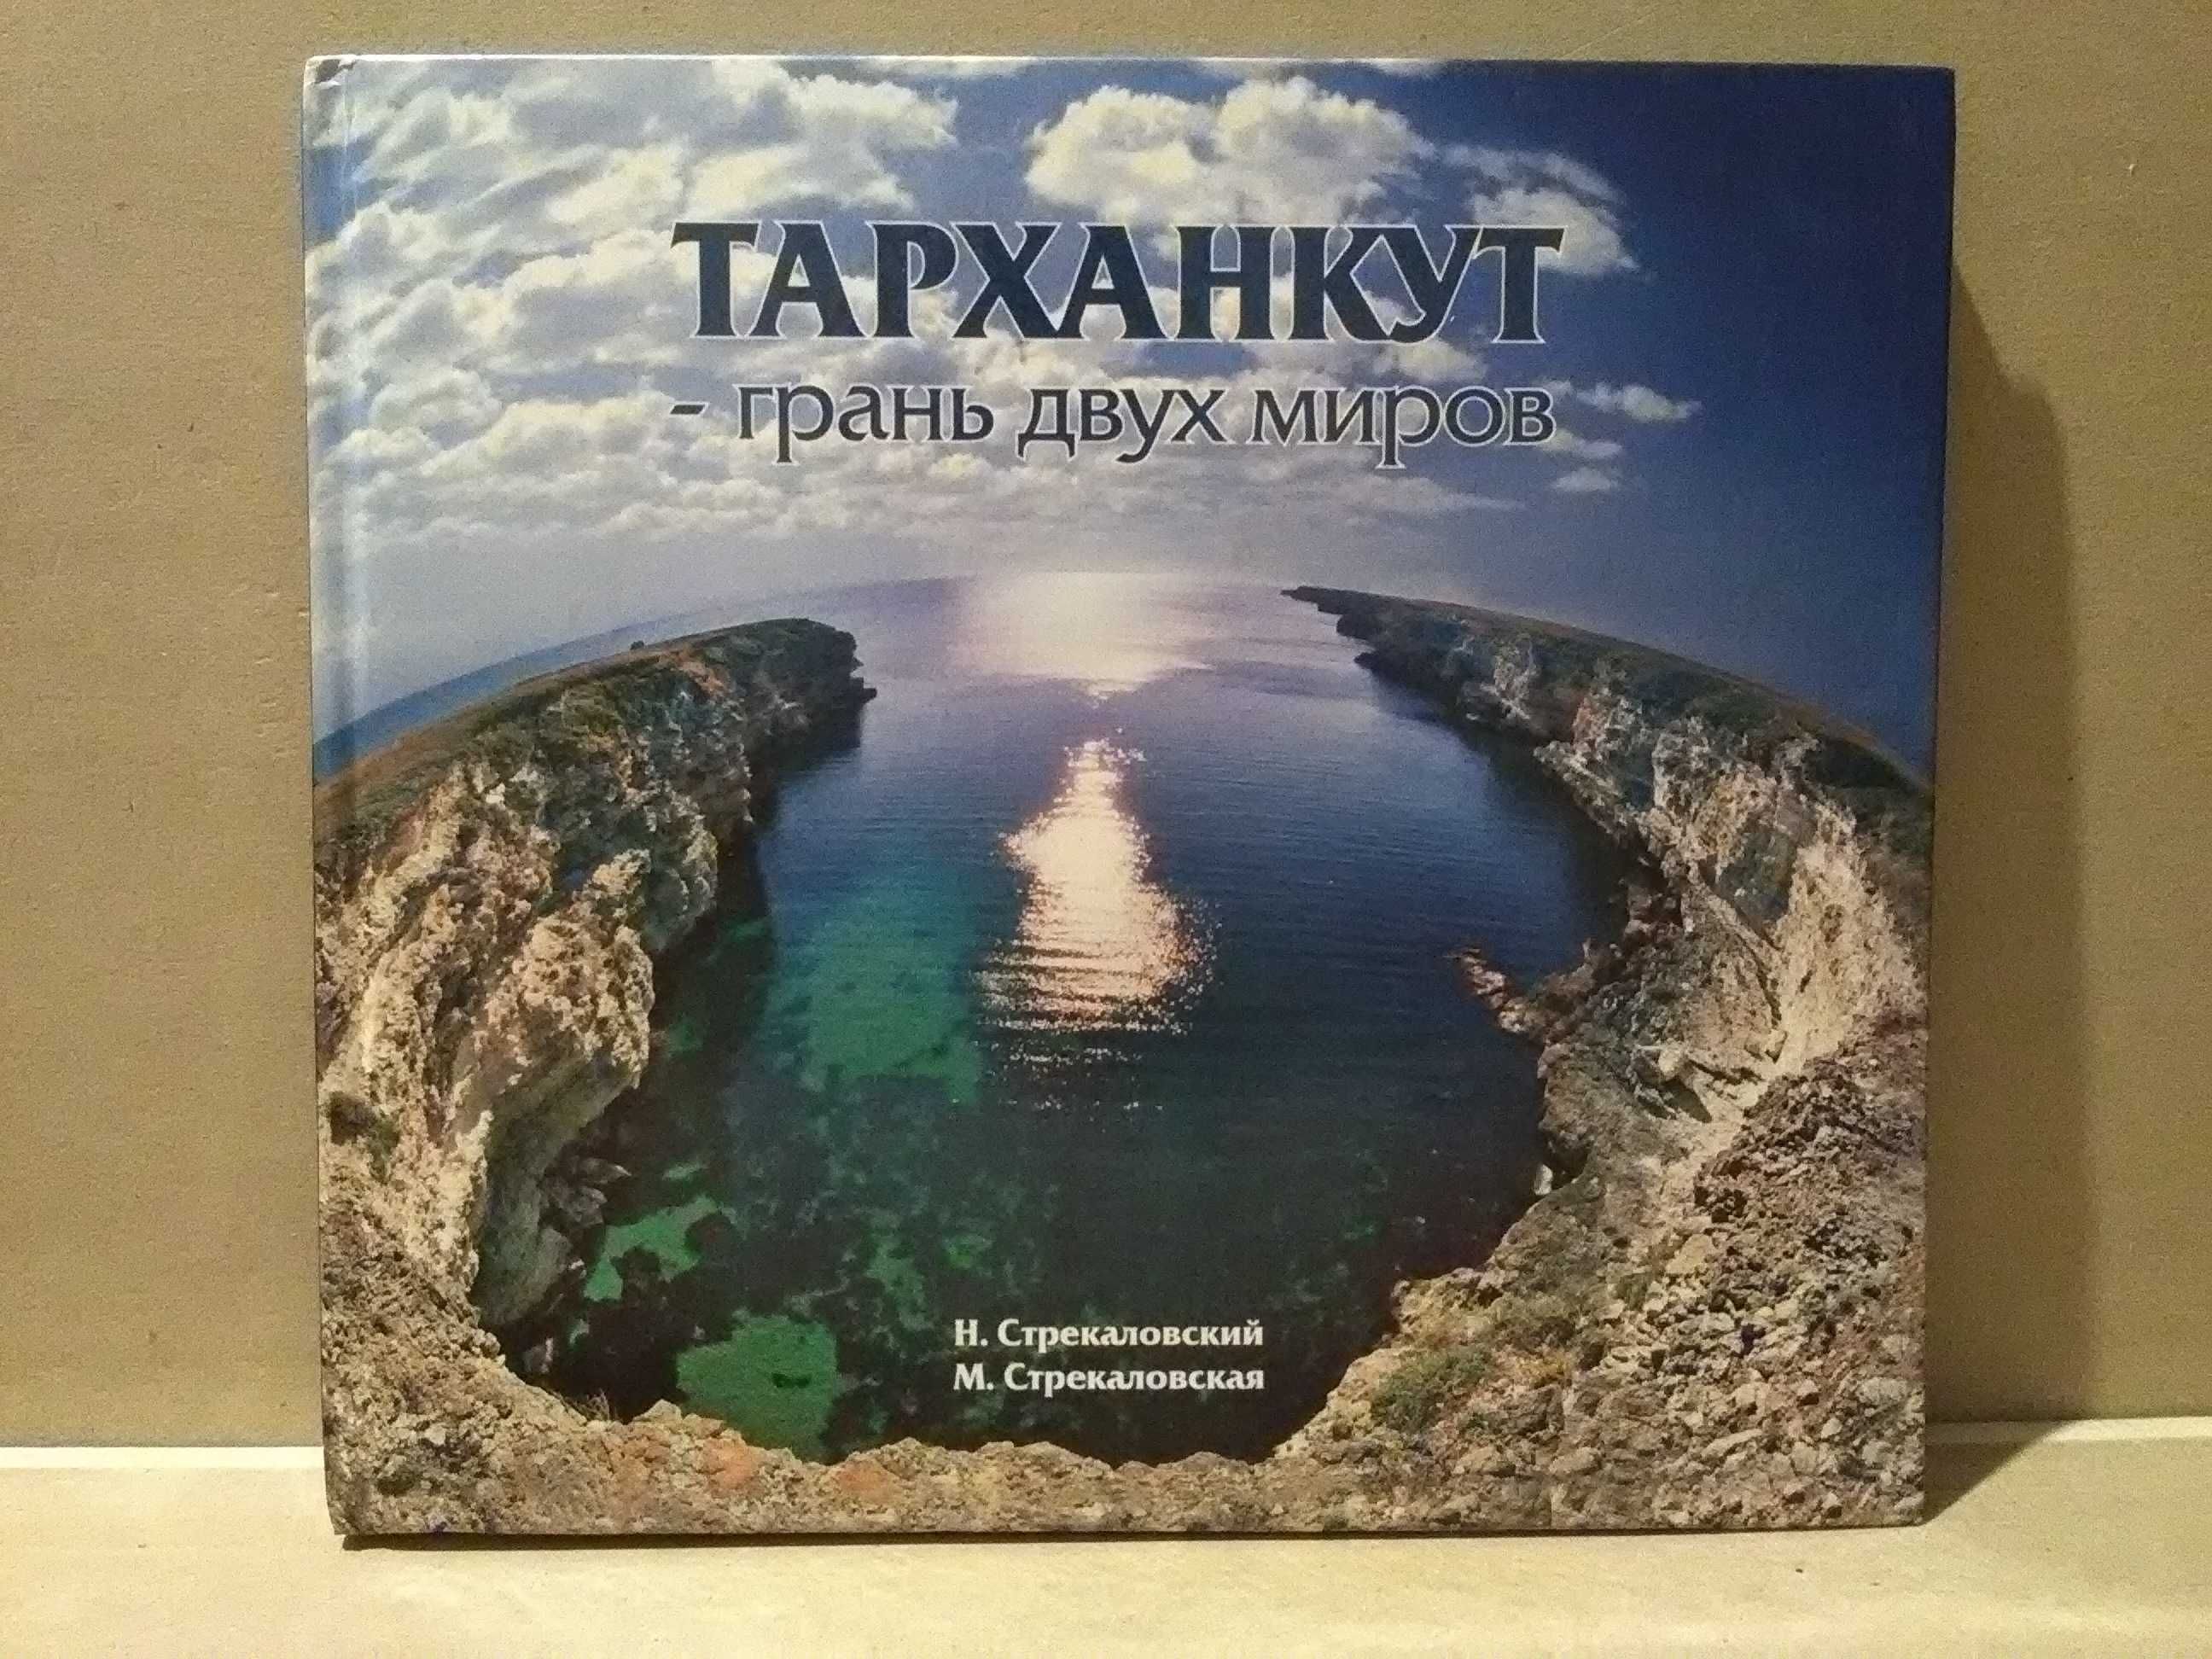 Тарханкут - грань двух миров. (Фотоальбом, Крым)